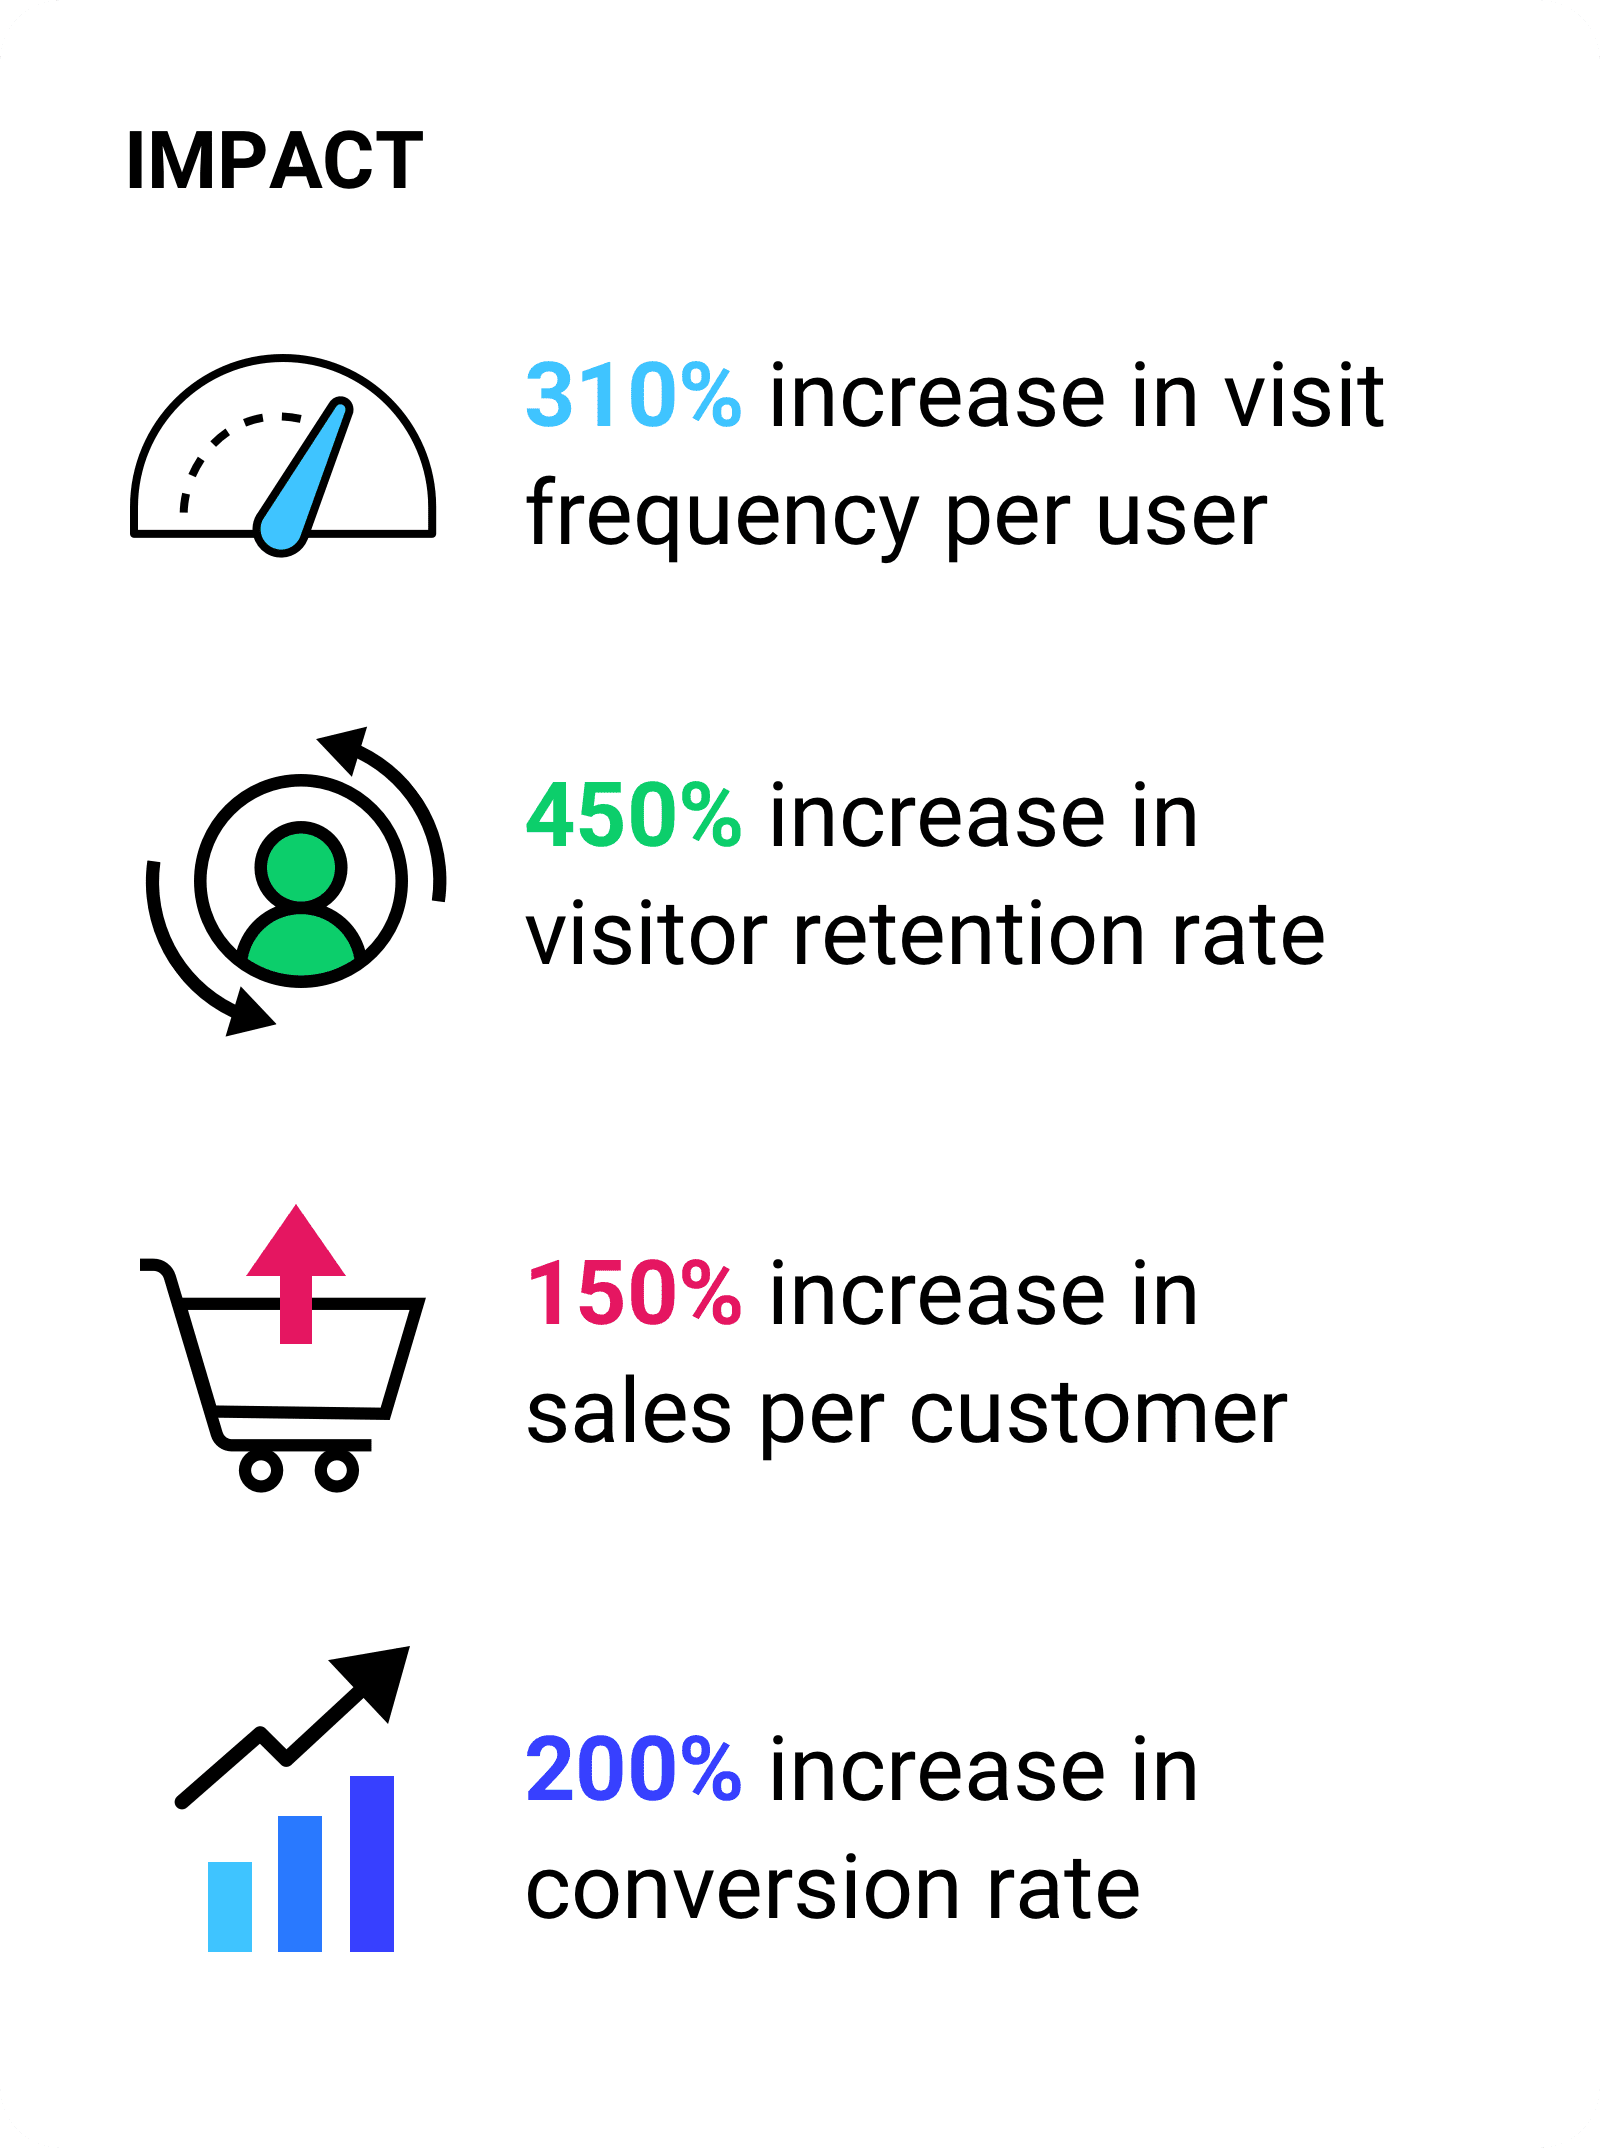 עלייה של 310% בתדירות הביקורים לכל משתמש.  גידול של 450% בשיעור שימור המבקרים. עלייה של 150% במכירות לכל לקוח.עלייה של 200% בשיעור ההמרה.